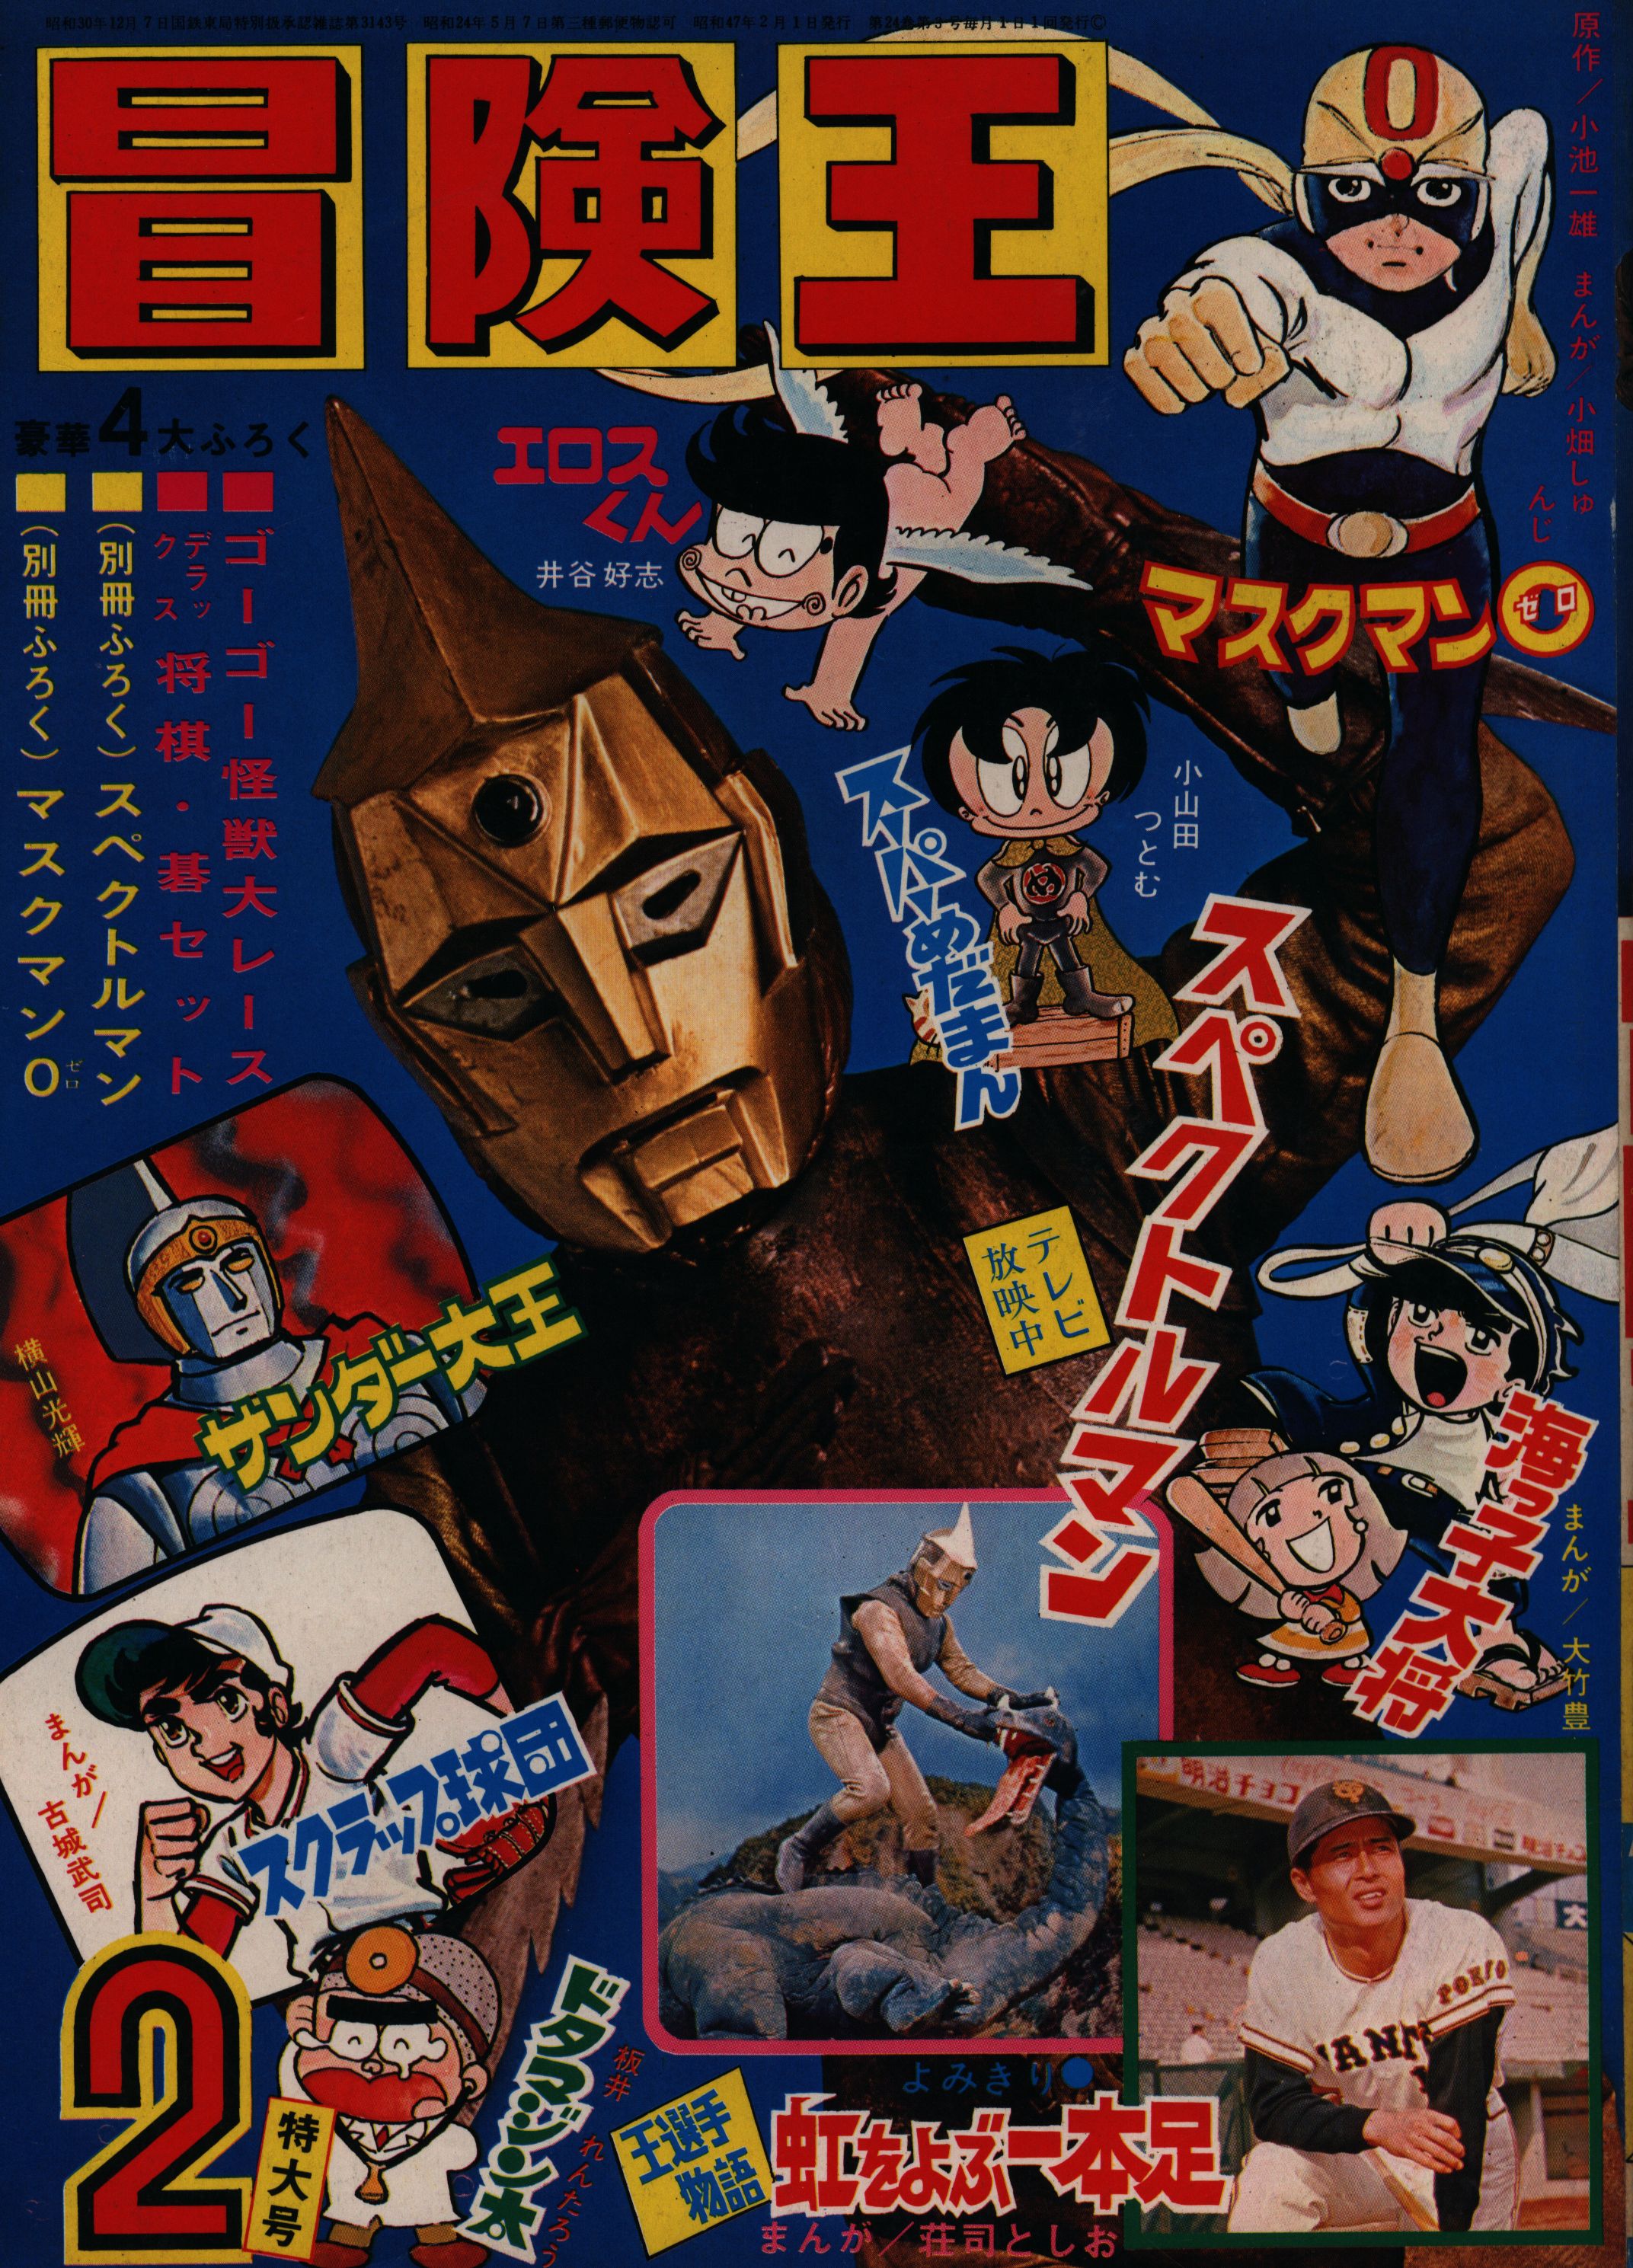 秋田書店 1972年(昭和47年)の漫画雑誌 冒険王 1972年(昭和47年)02月号 4702